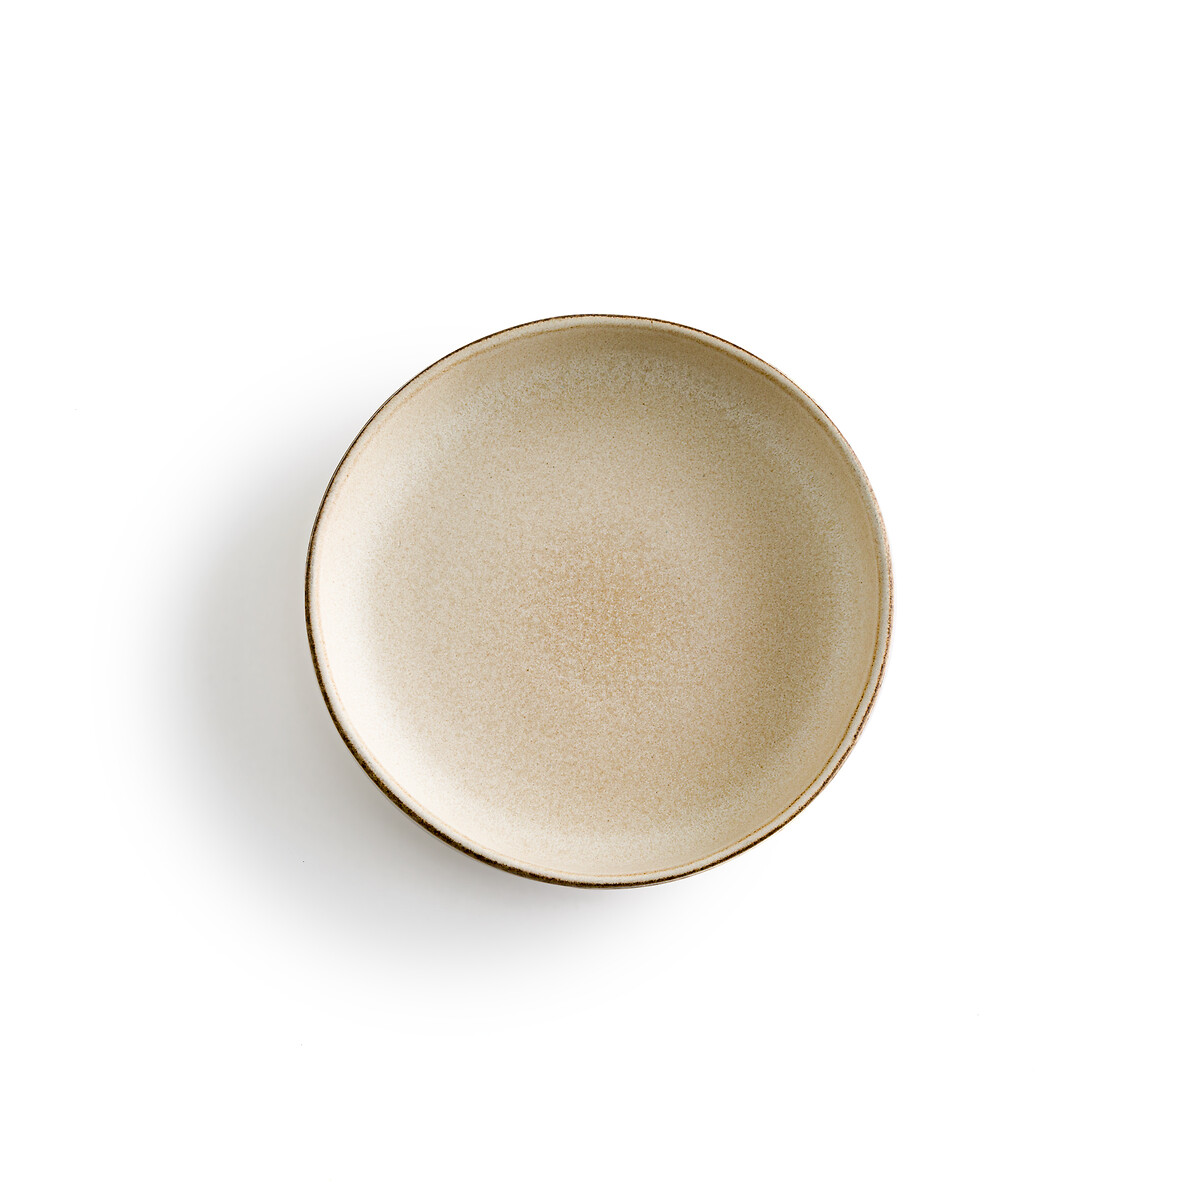 Комплект из 4 тарелок для Пасты из керамики Gandra единый размер бежевый